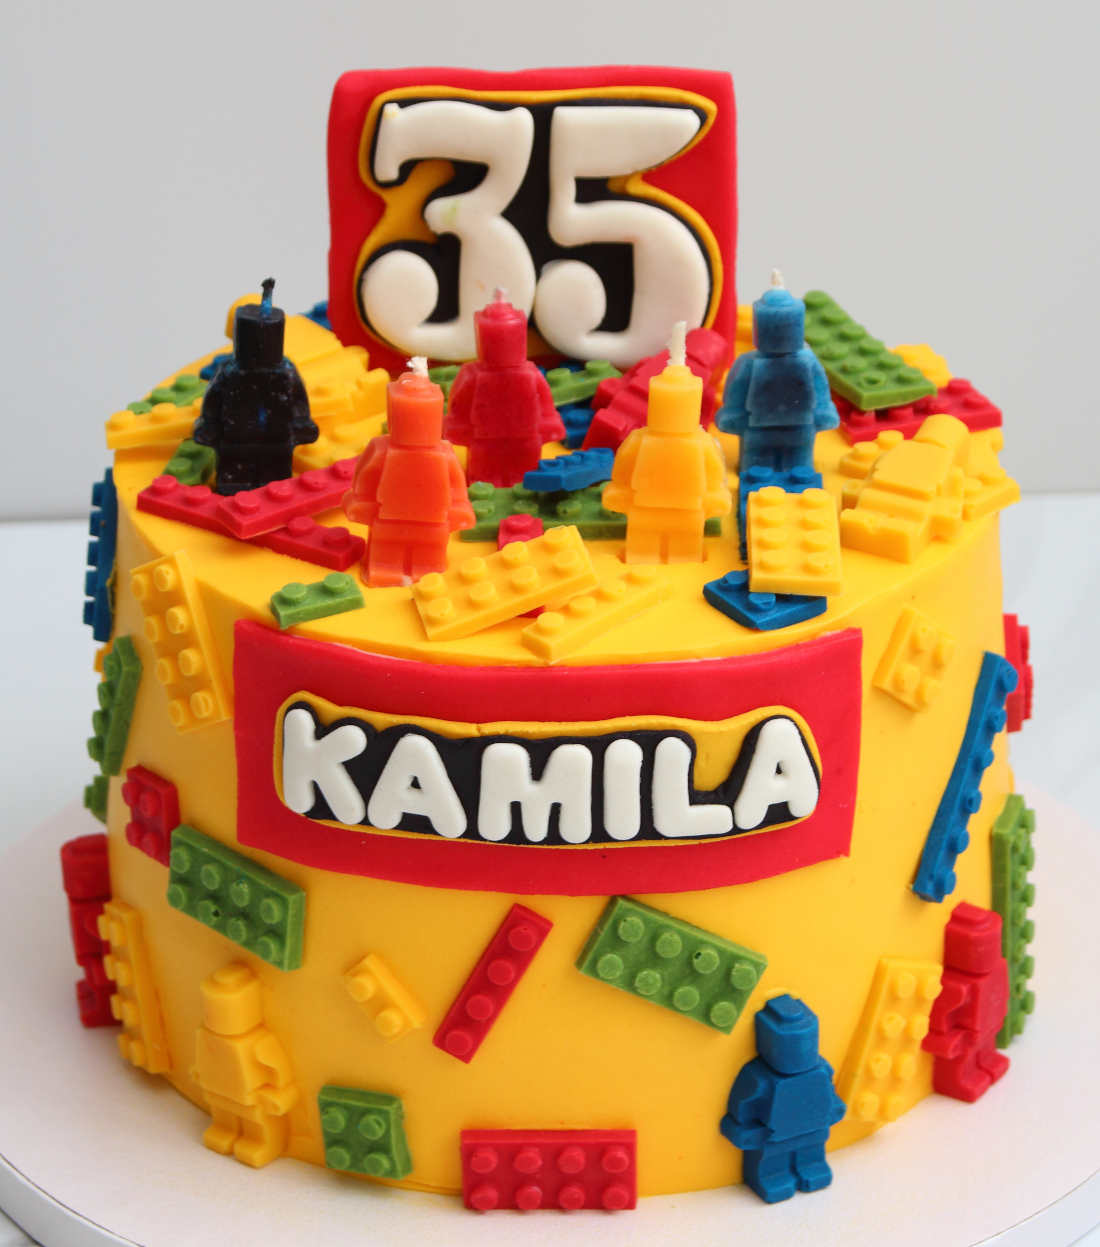 Торт конструктор Лего на 35 лет